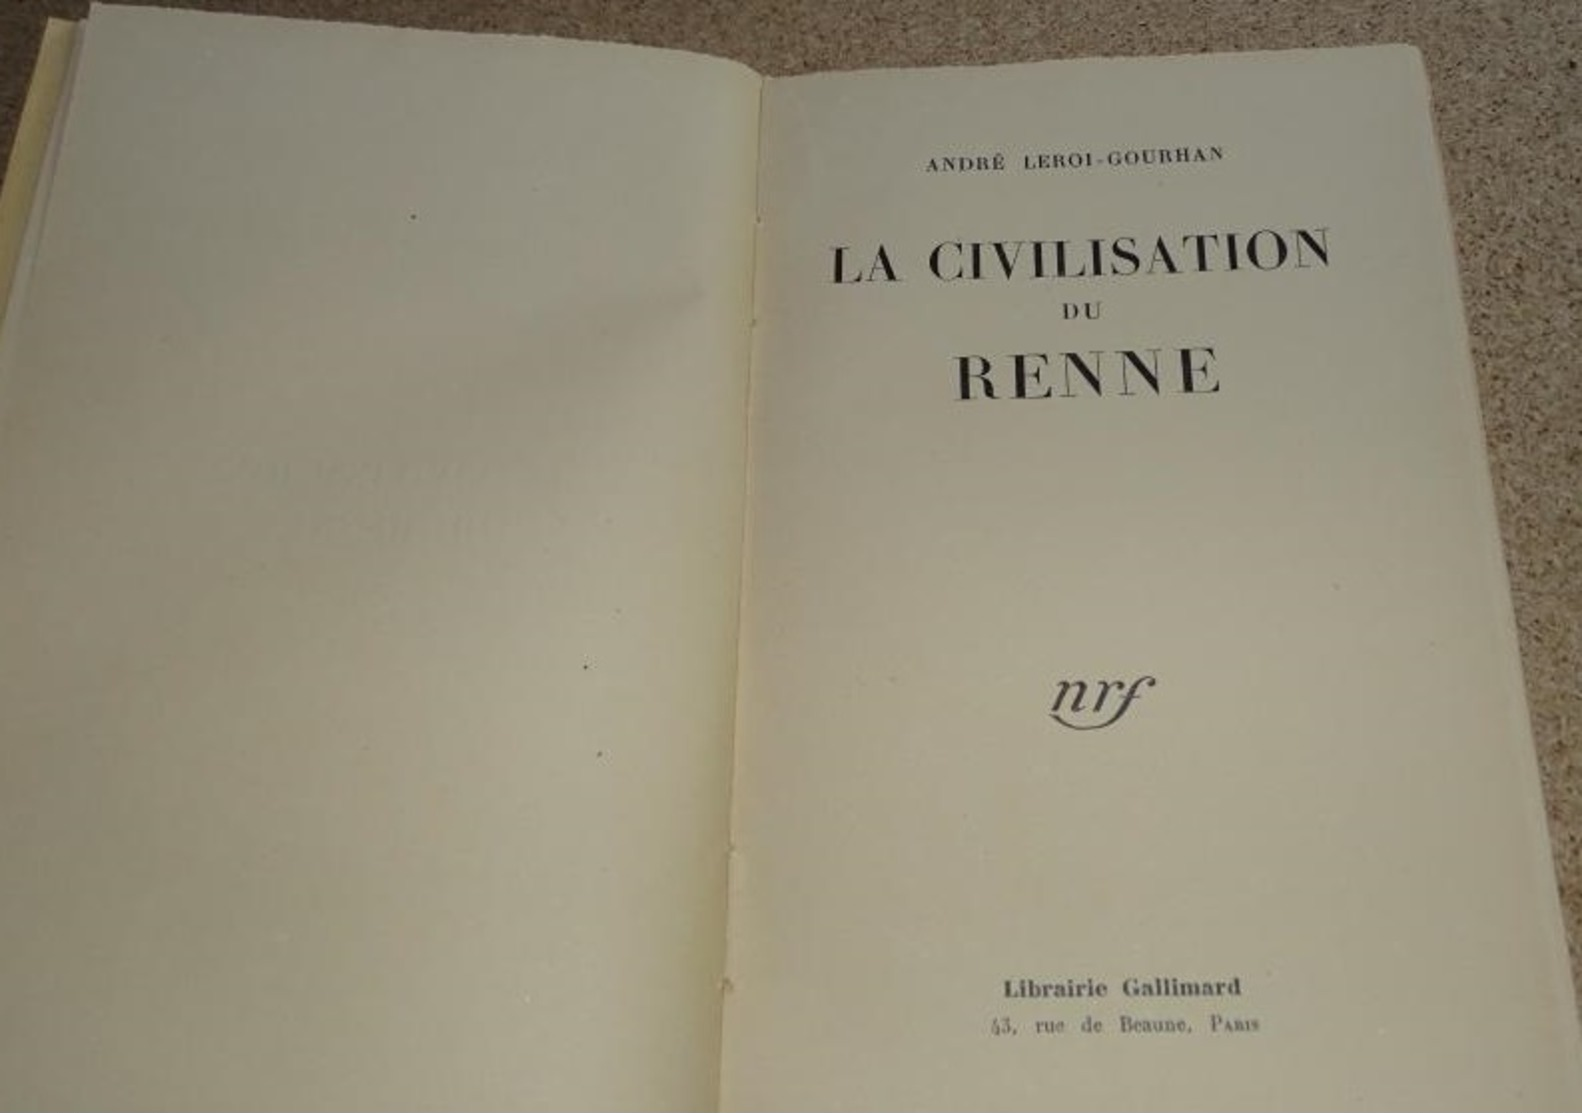 Géographie Humaine La Civilisation Du Renne - André Leroi Gourhan - Nrf - 1936 - Natualeza